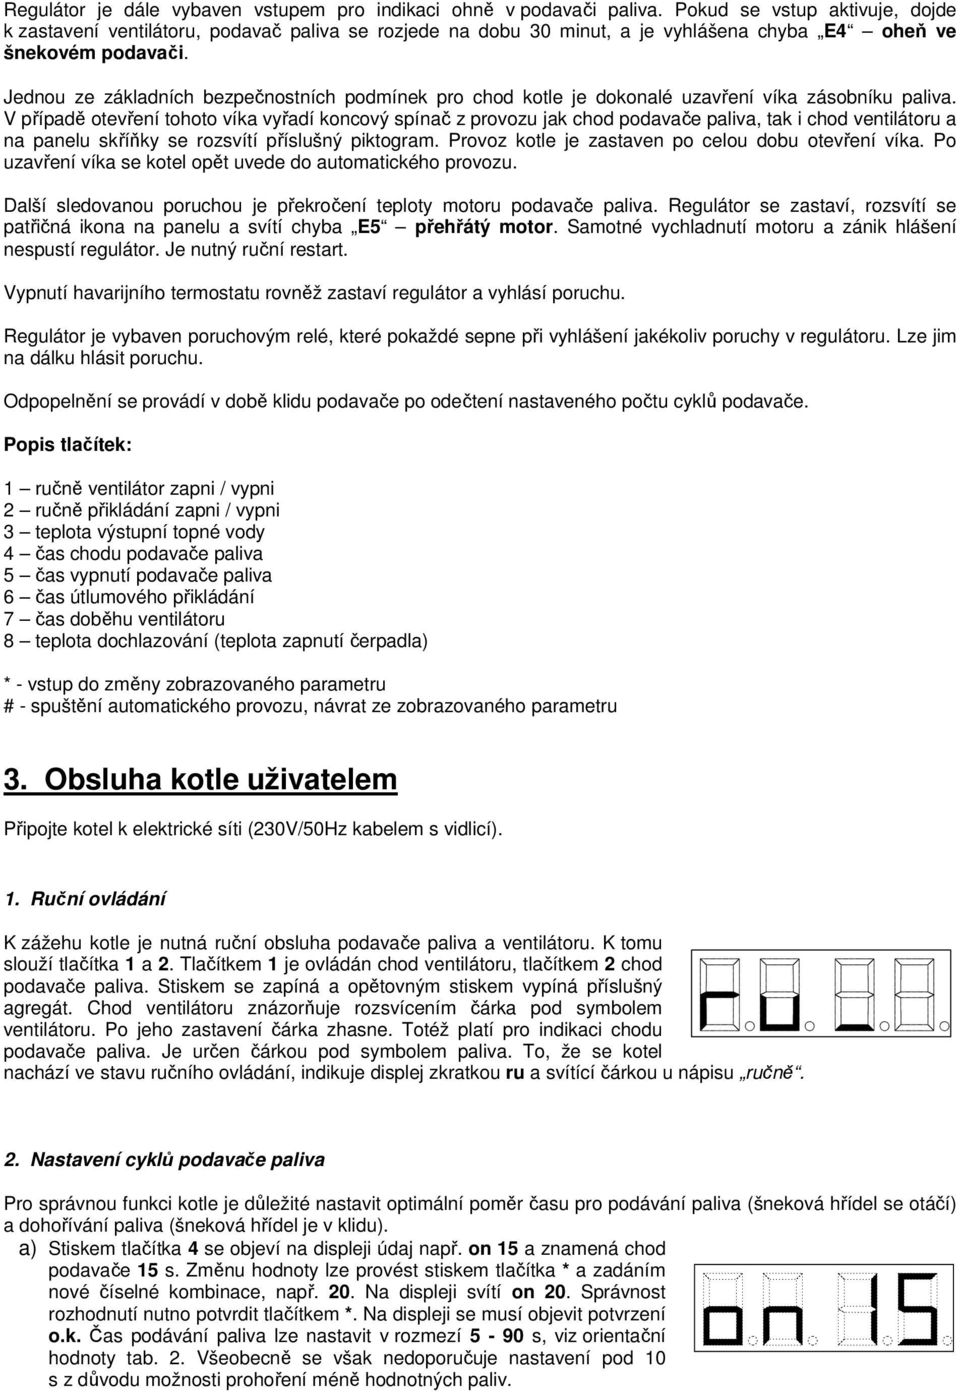 Dodatek k návodu k obsluze a instalaci kotlů BENEKOV. Regulátor RKU 1 - PDF  Free Download